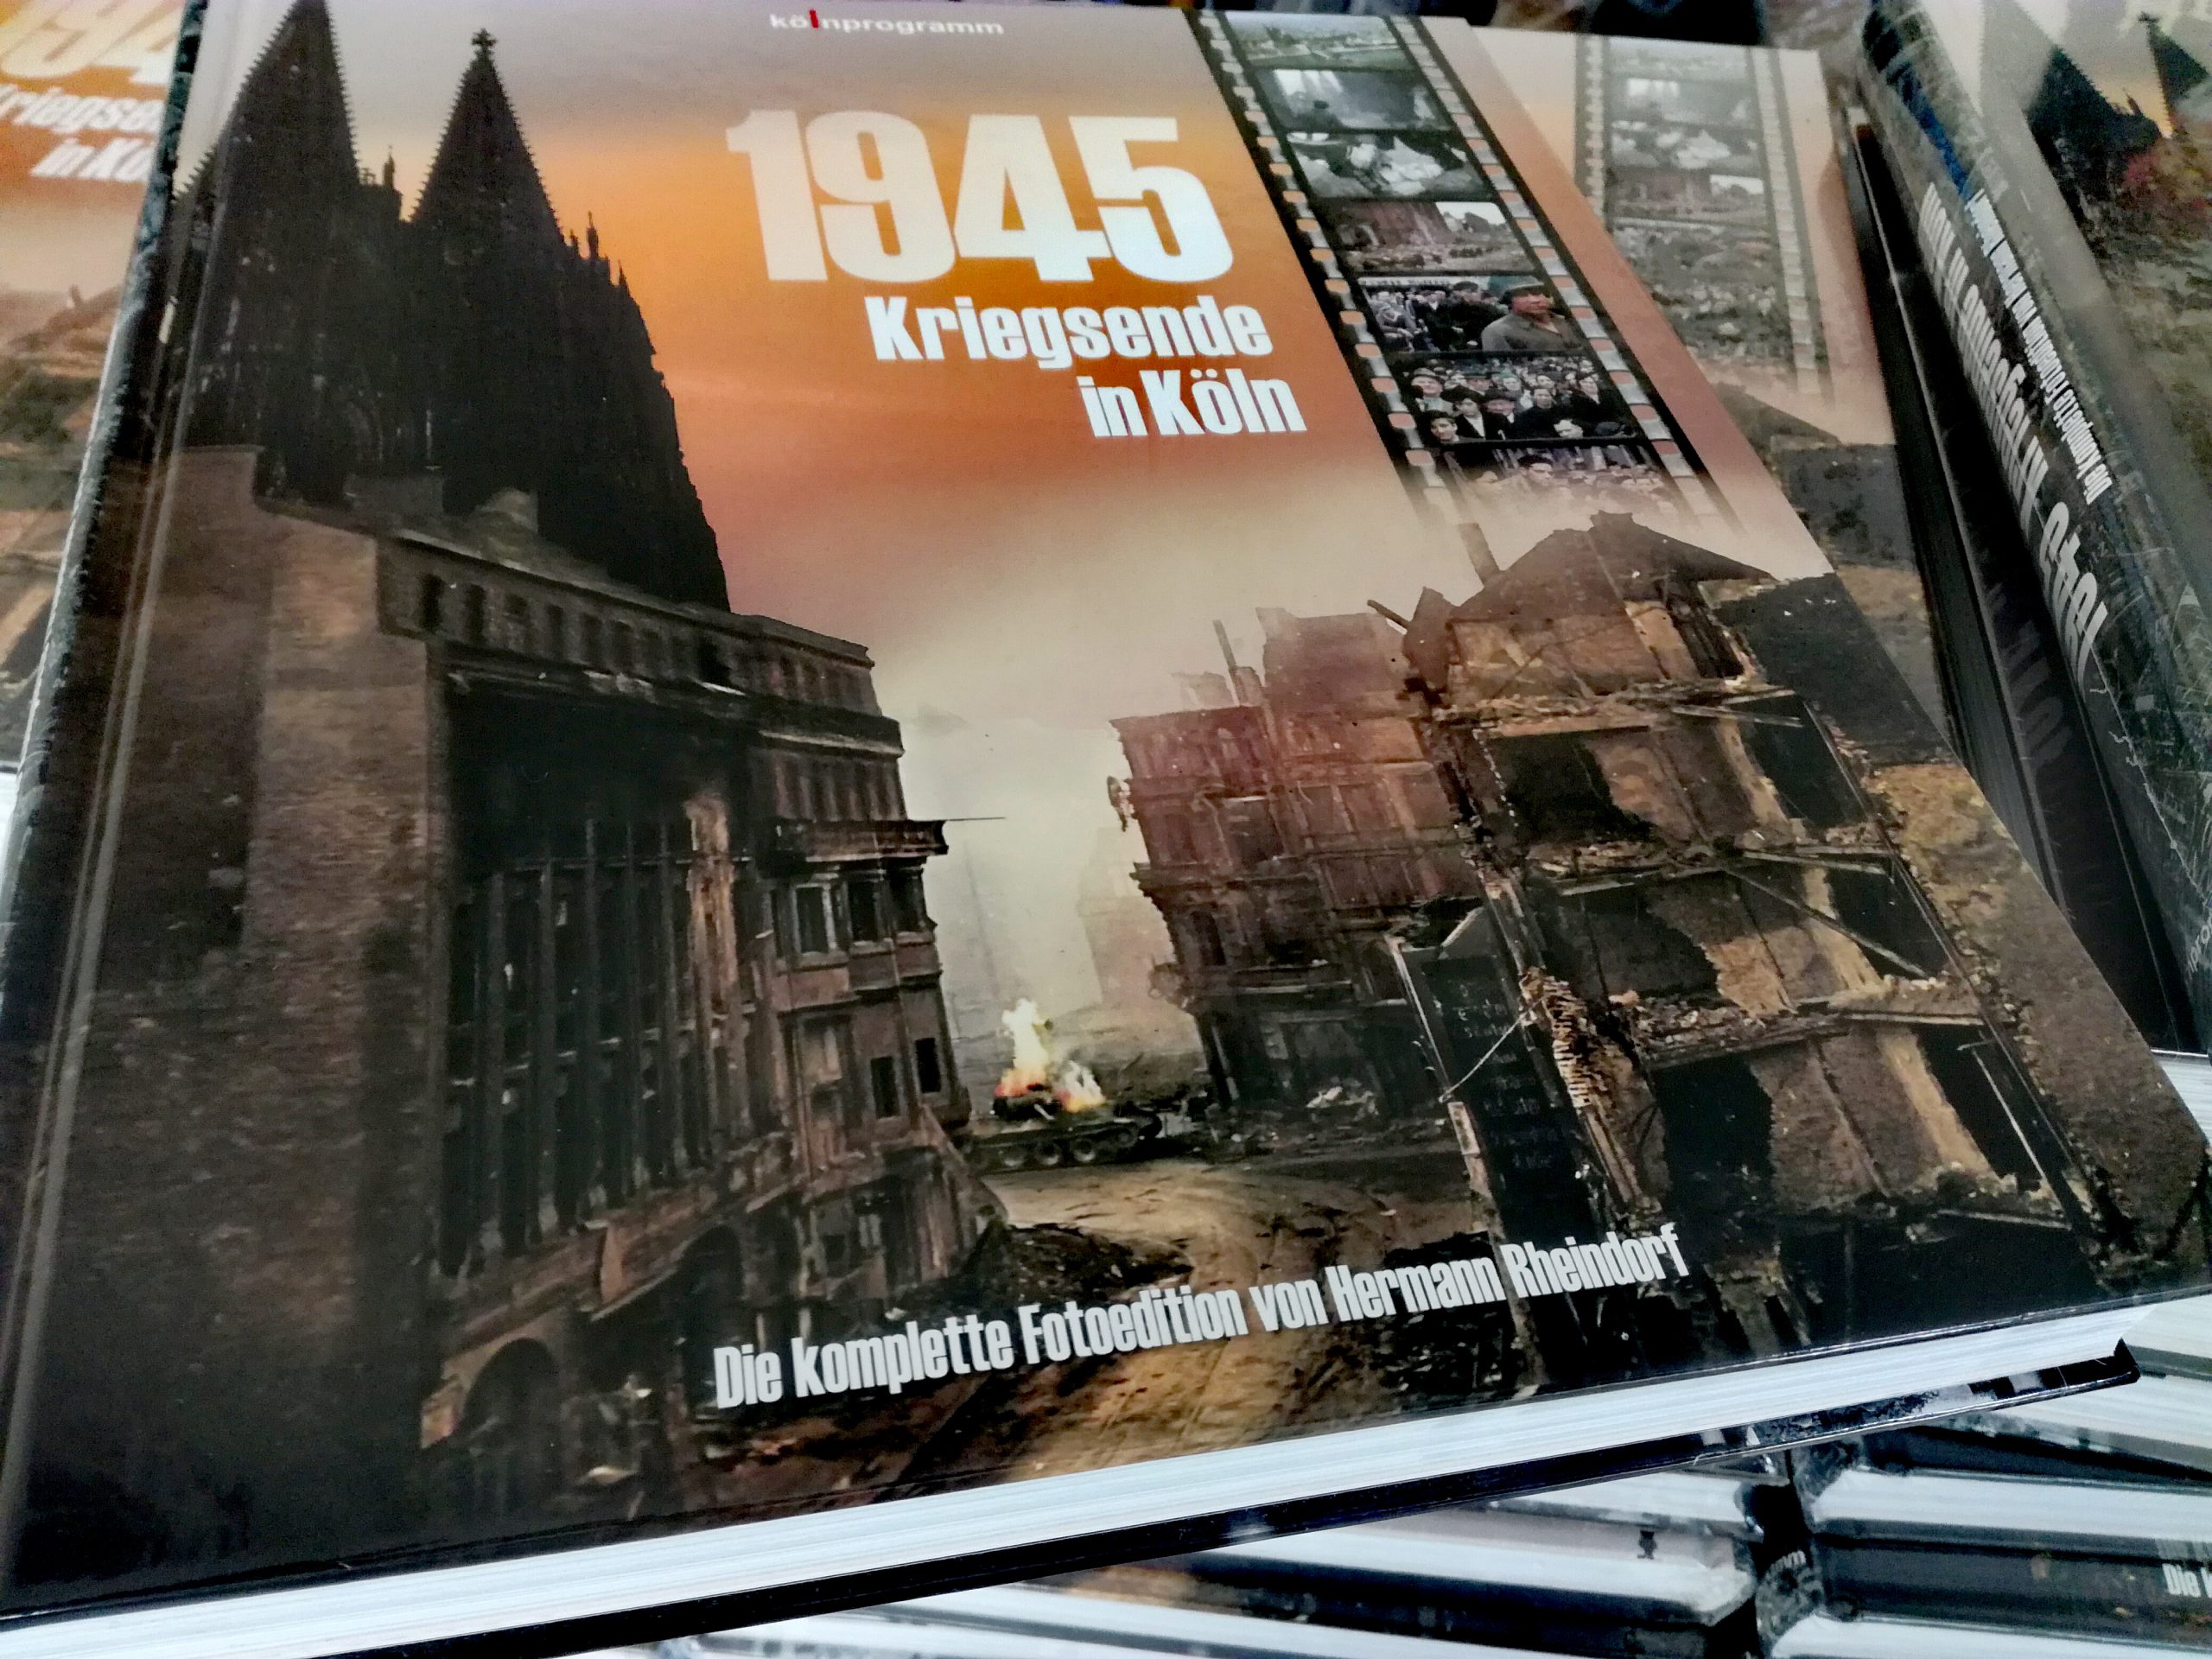 Neuerscheinung 2. Auflage Buch 1945 Kriegsende in Köln